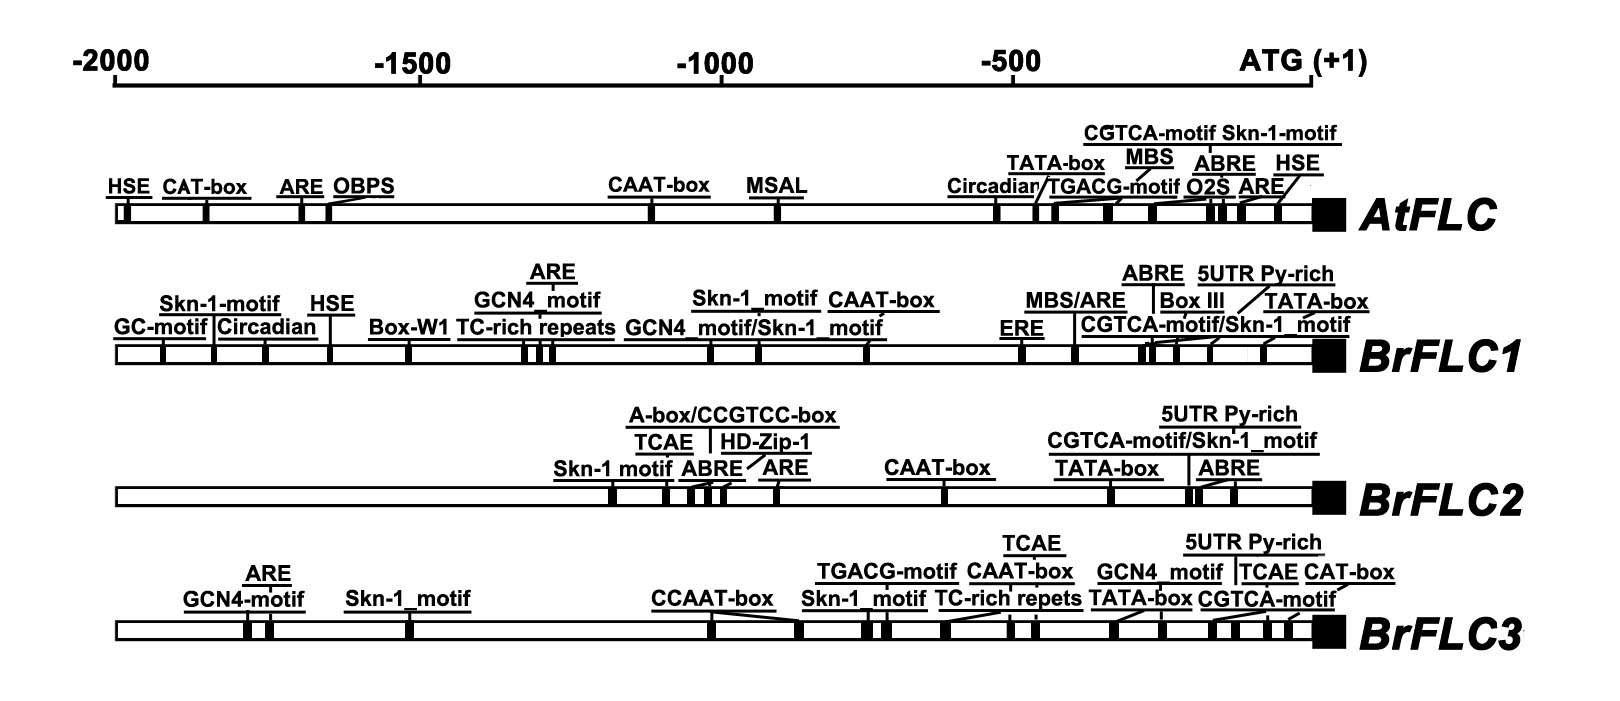 배추 개화조절 BrF LC 유전자군의 프로모터들과 애기장대 개화조절 AtF LC 유전자프로모터에 포함된 작용위치요소들의 종류와 위치를 비교한 그림.